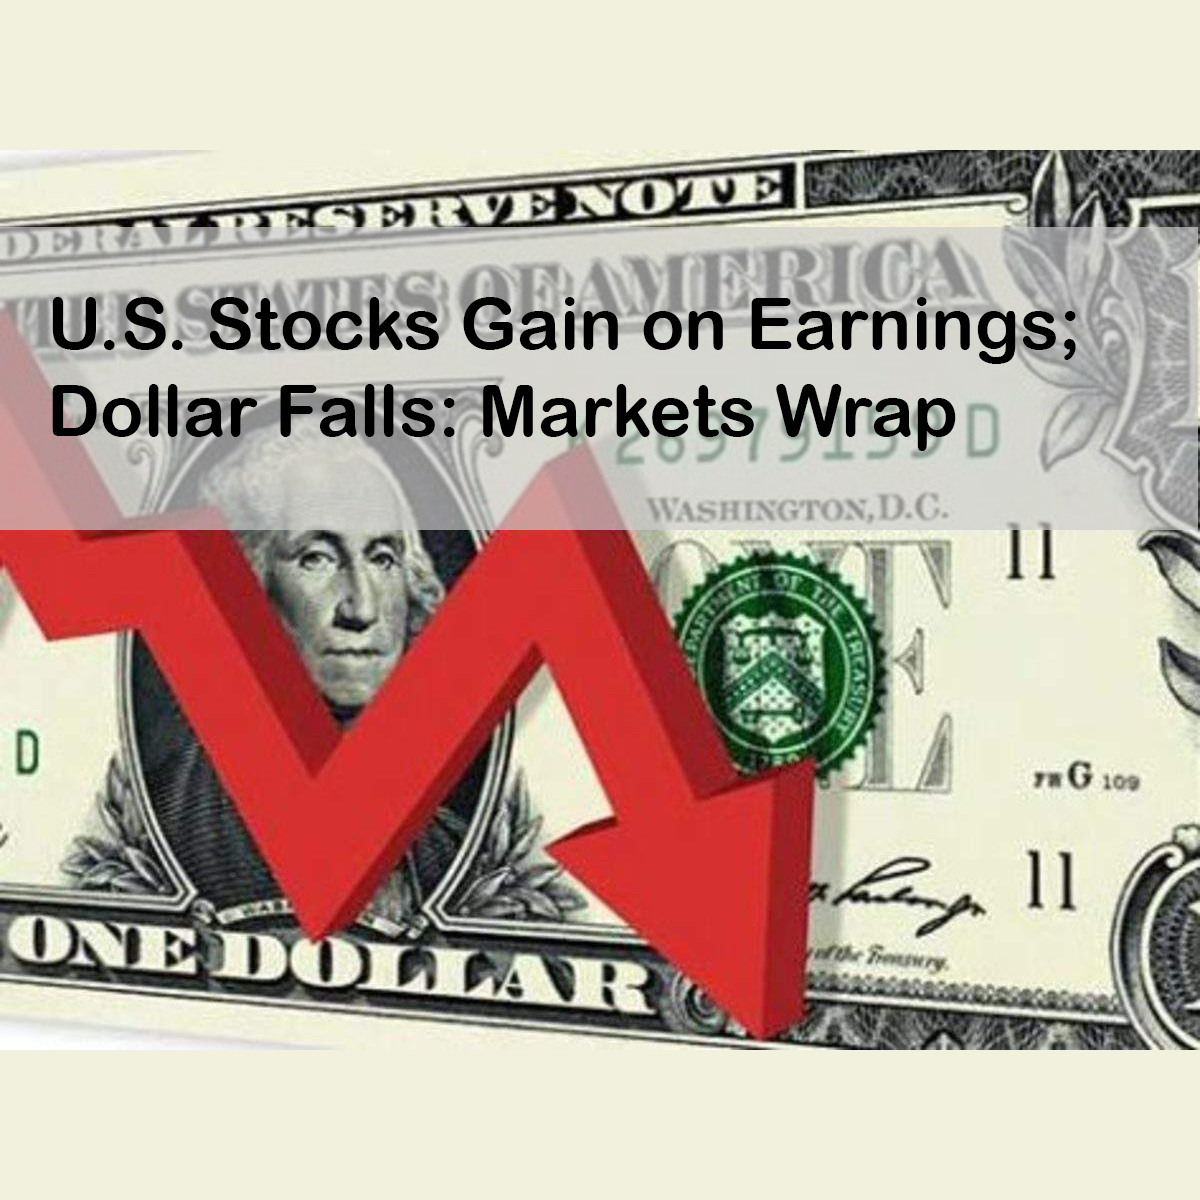 U.S. Stocks Gain on Earnings; Dollar Falls: Markets Wrap